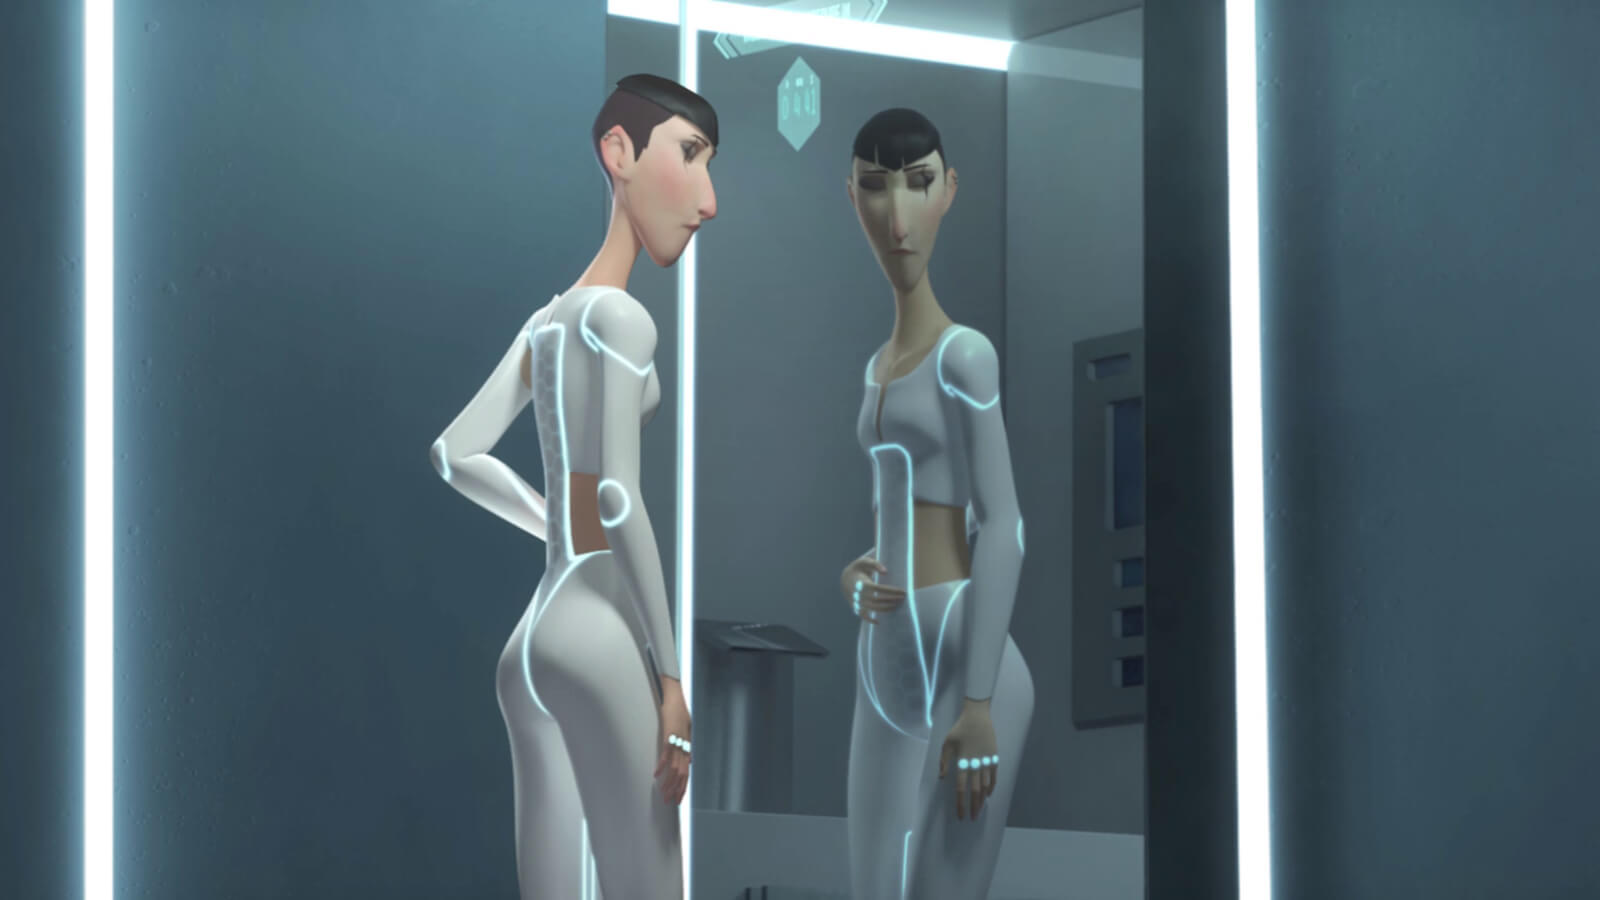 Una mujer alta y delgada con una cicatriz en el ojo con ropa blanca futurista se mira en un espejo sosteniendo su estómago.